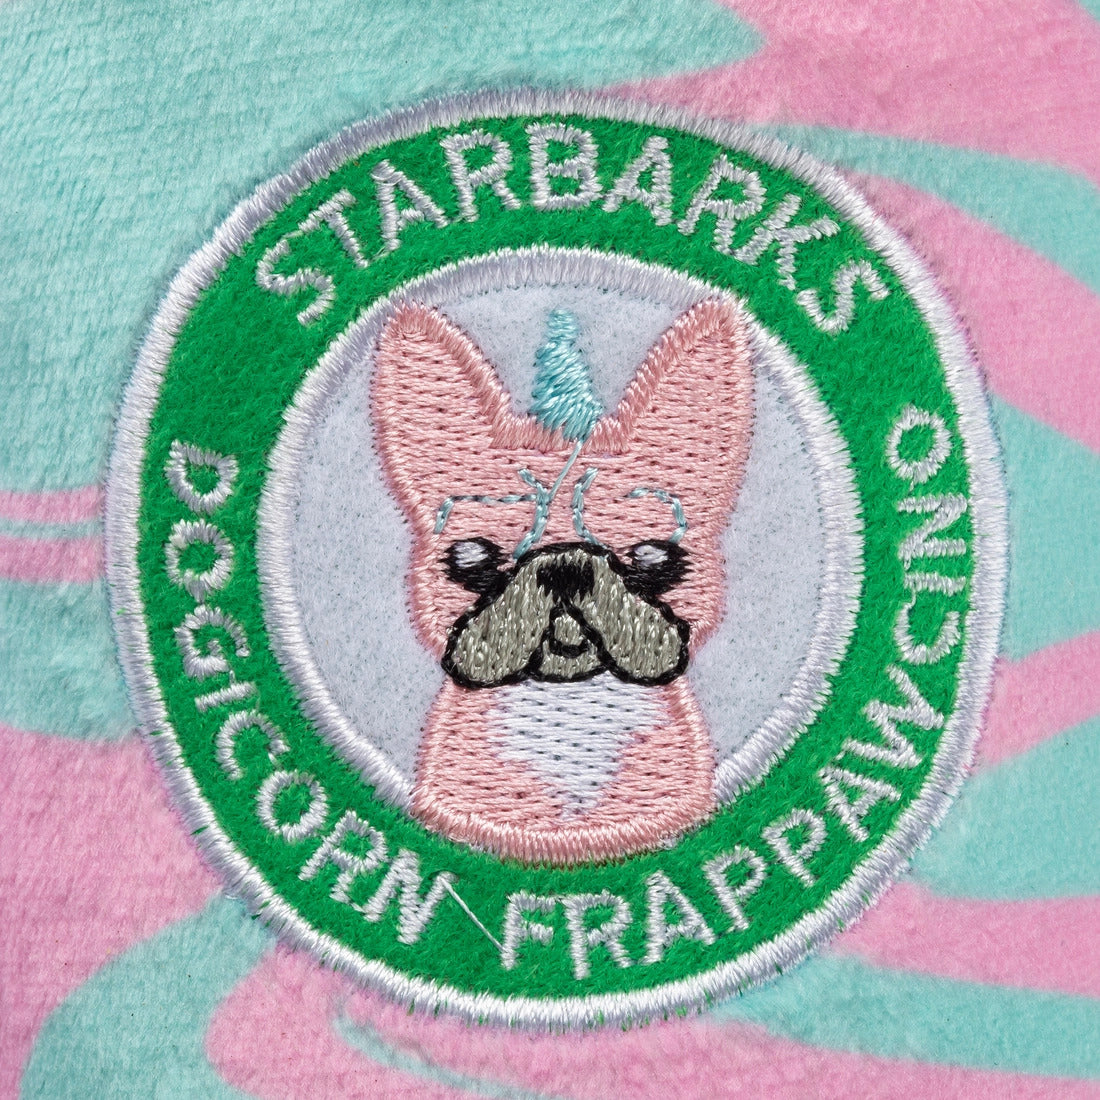 Starbarks Dogicorn Frapawccino